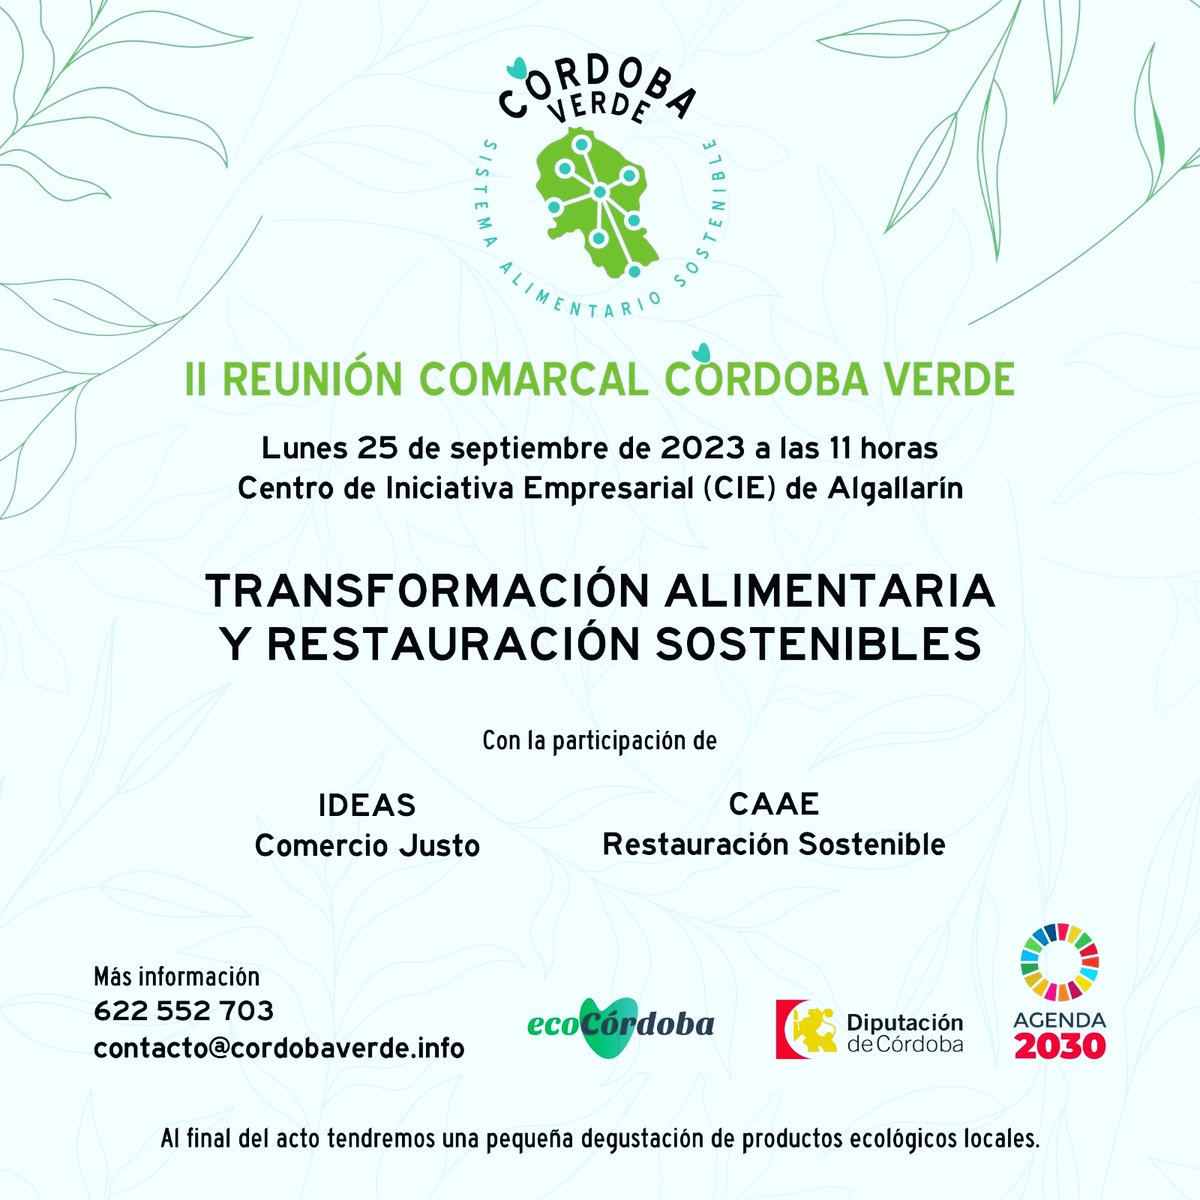 El próximo lunes estaremos en #Algallarin hablando del programa #cordobaverde
Conoceremos los nuevos proyectos de #ideas y la nueva certificación de restauración sostenible del #caae
Por un sistema alimentario más sostenible